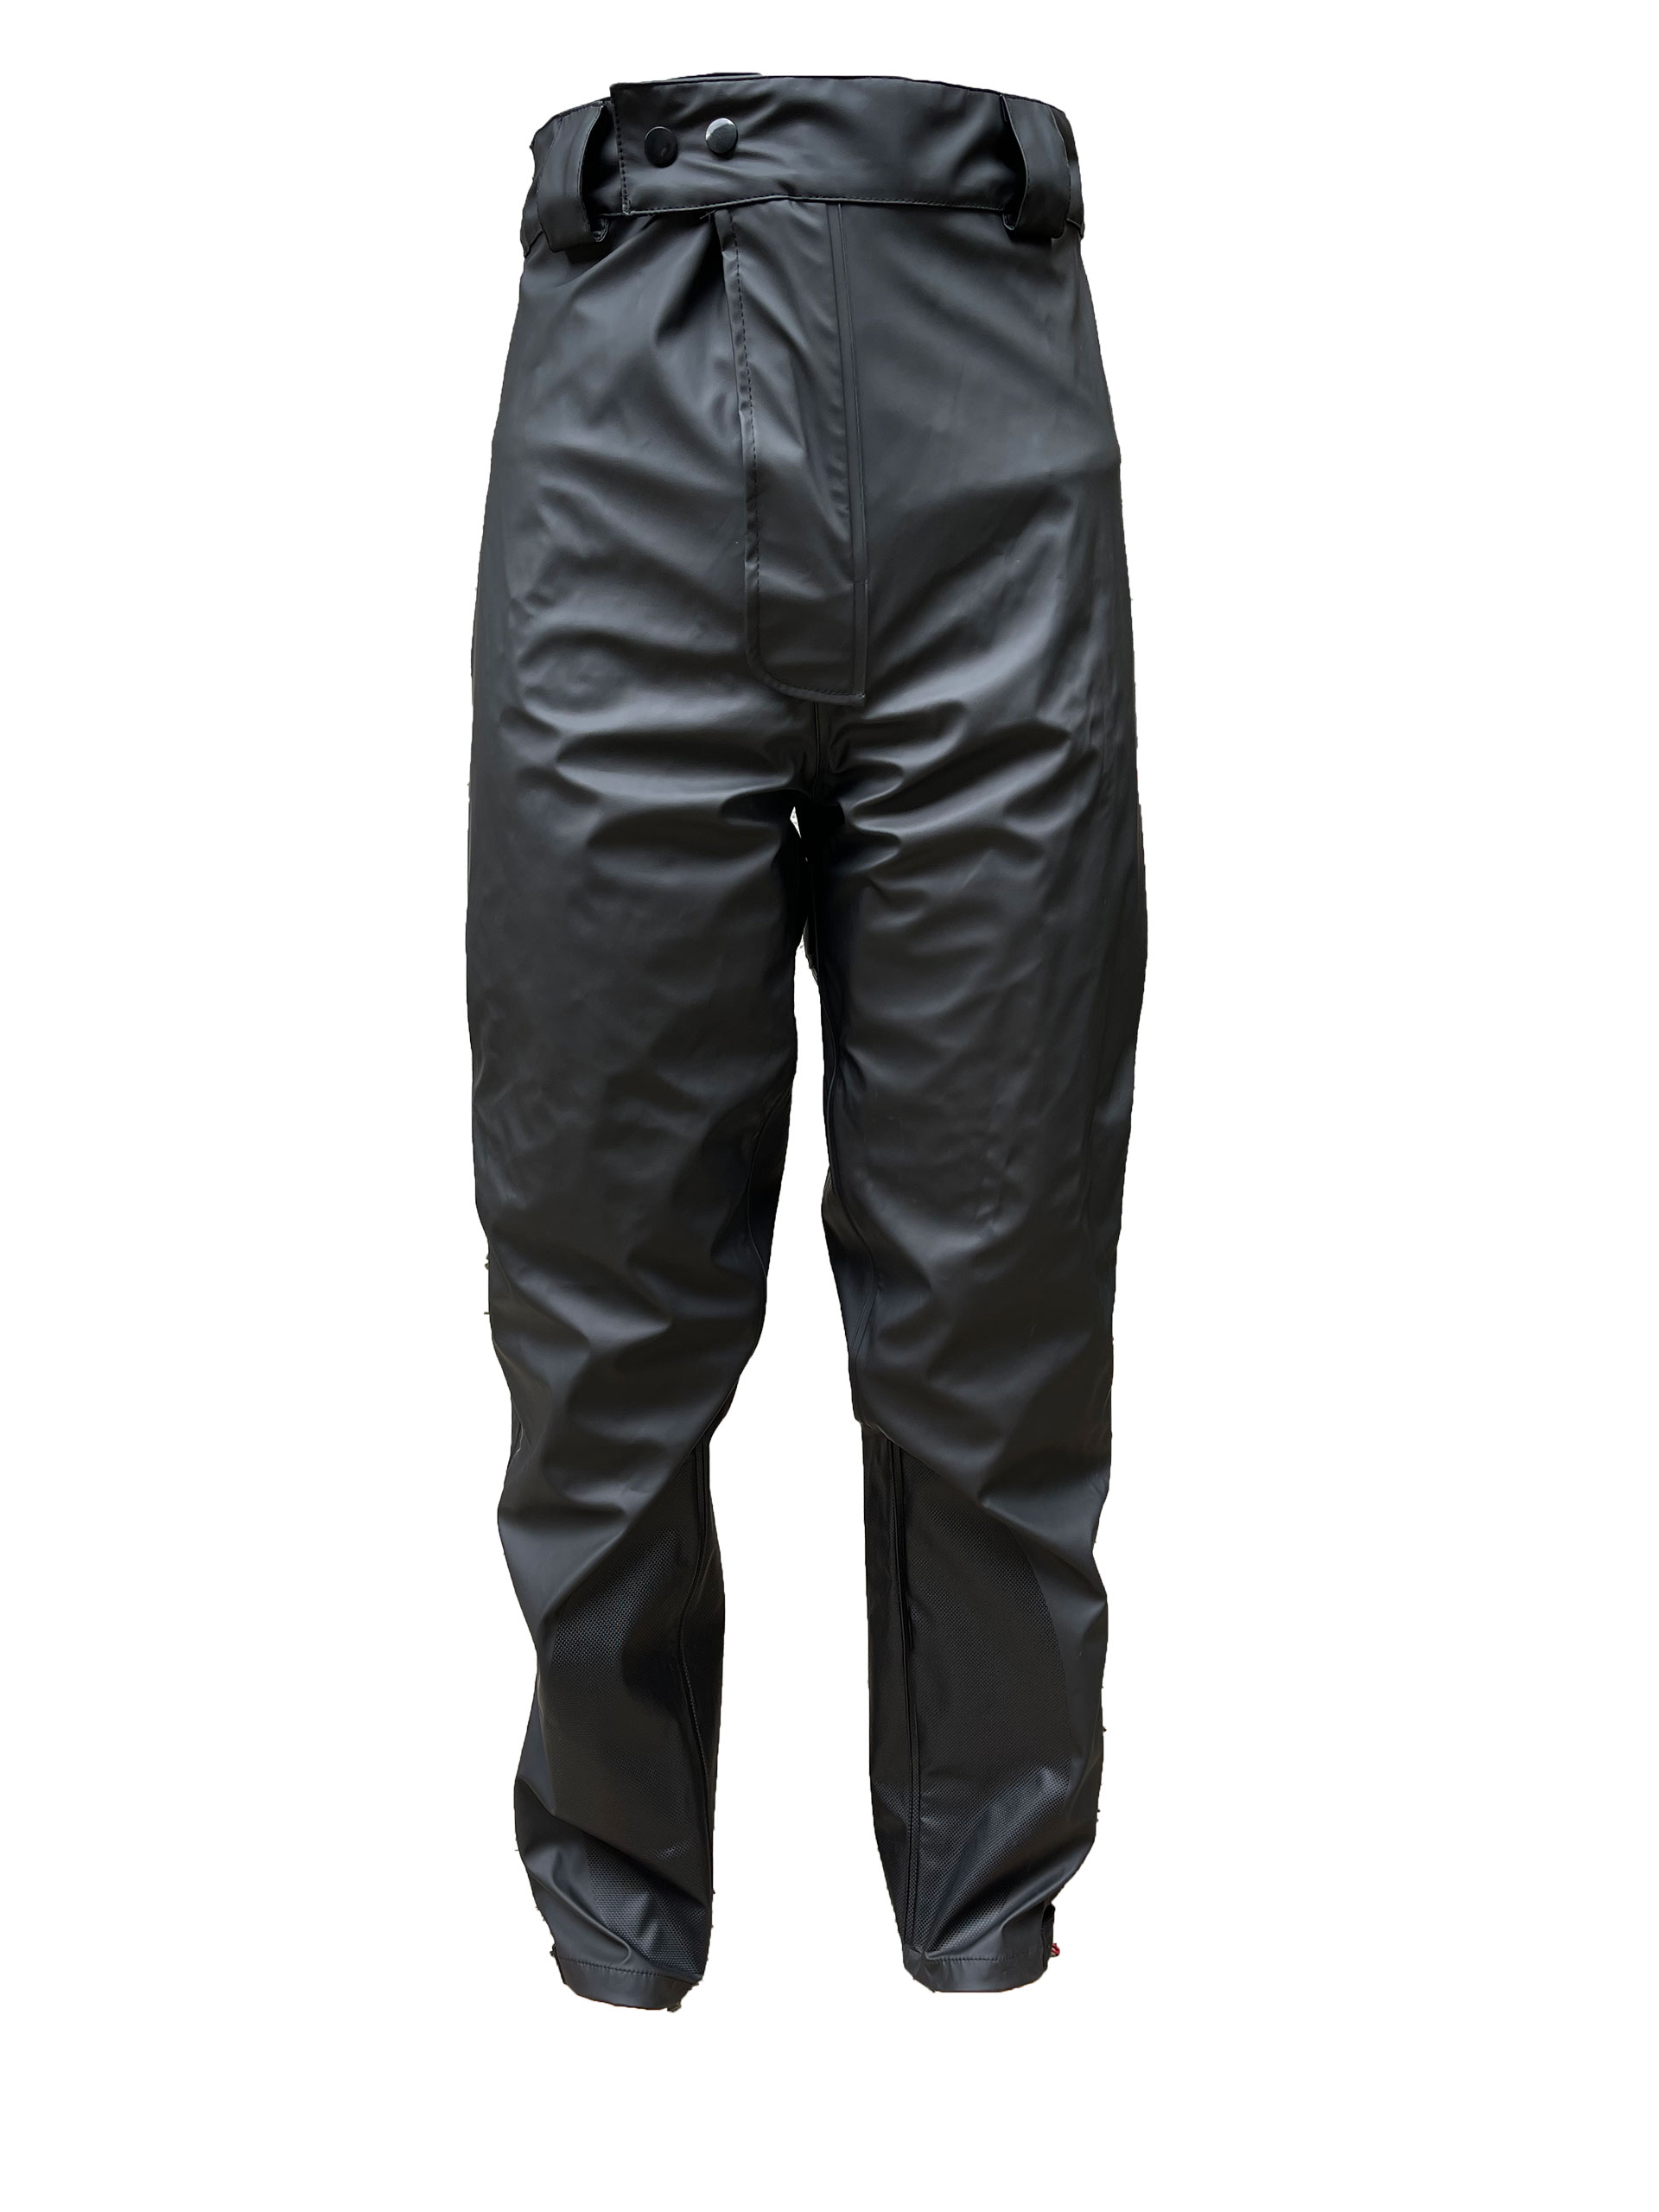 Korum Neoteric Waterproof Trousers - £32.99